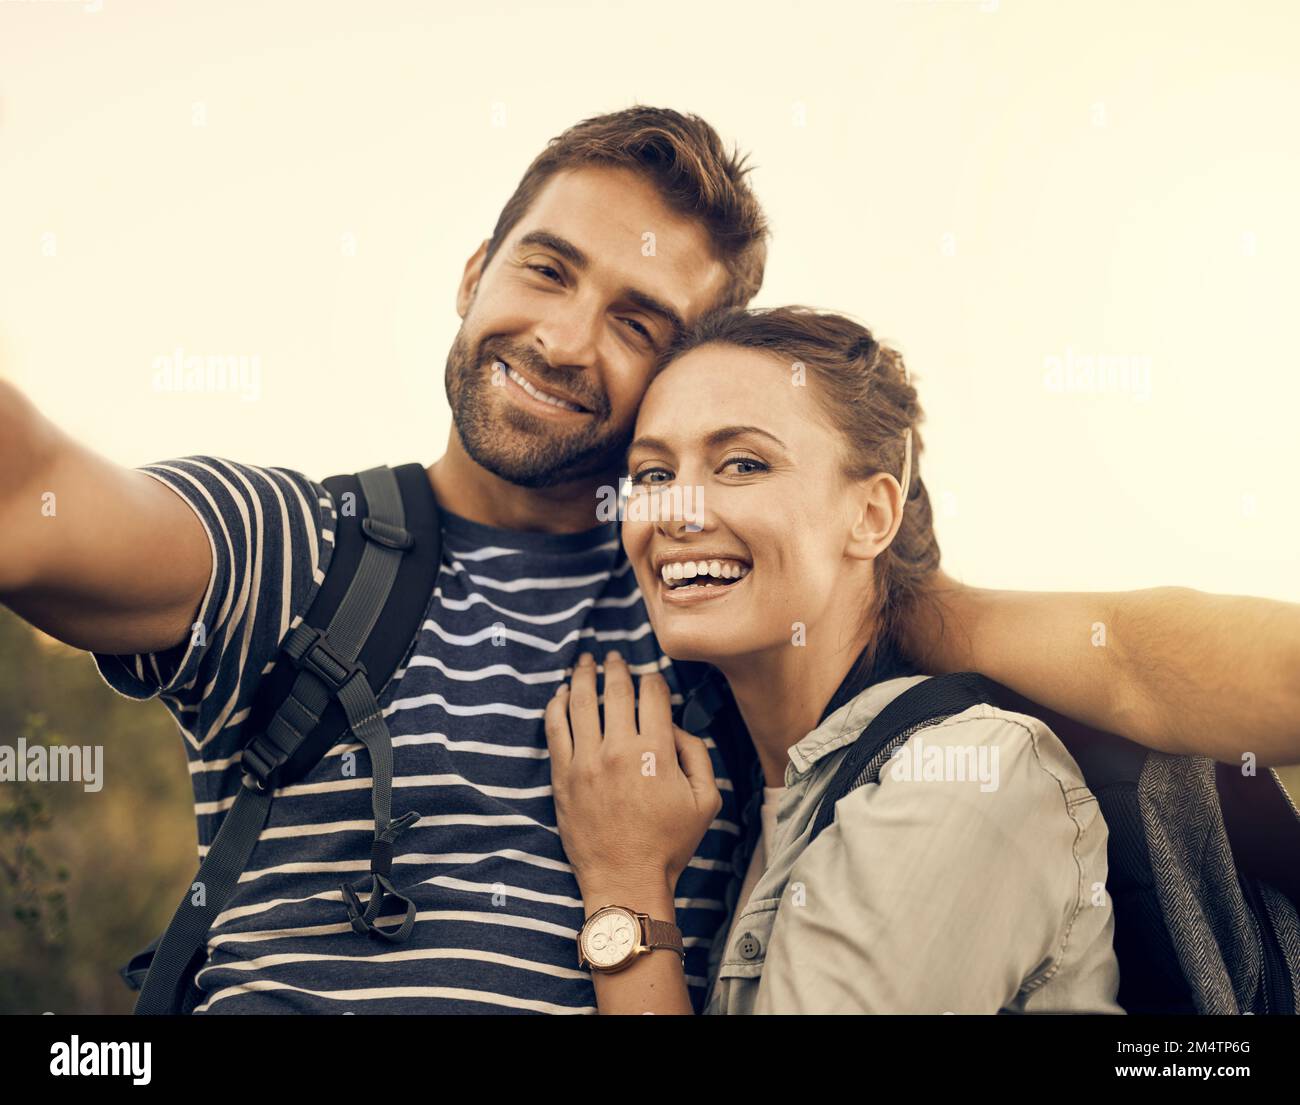 Wir lieben Outdoor-Abenteuer. Ein glückliches Paar, das ein Selfie macht, während er wandert. Stockfoto